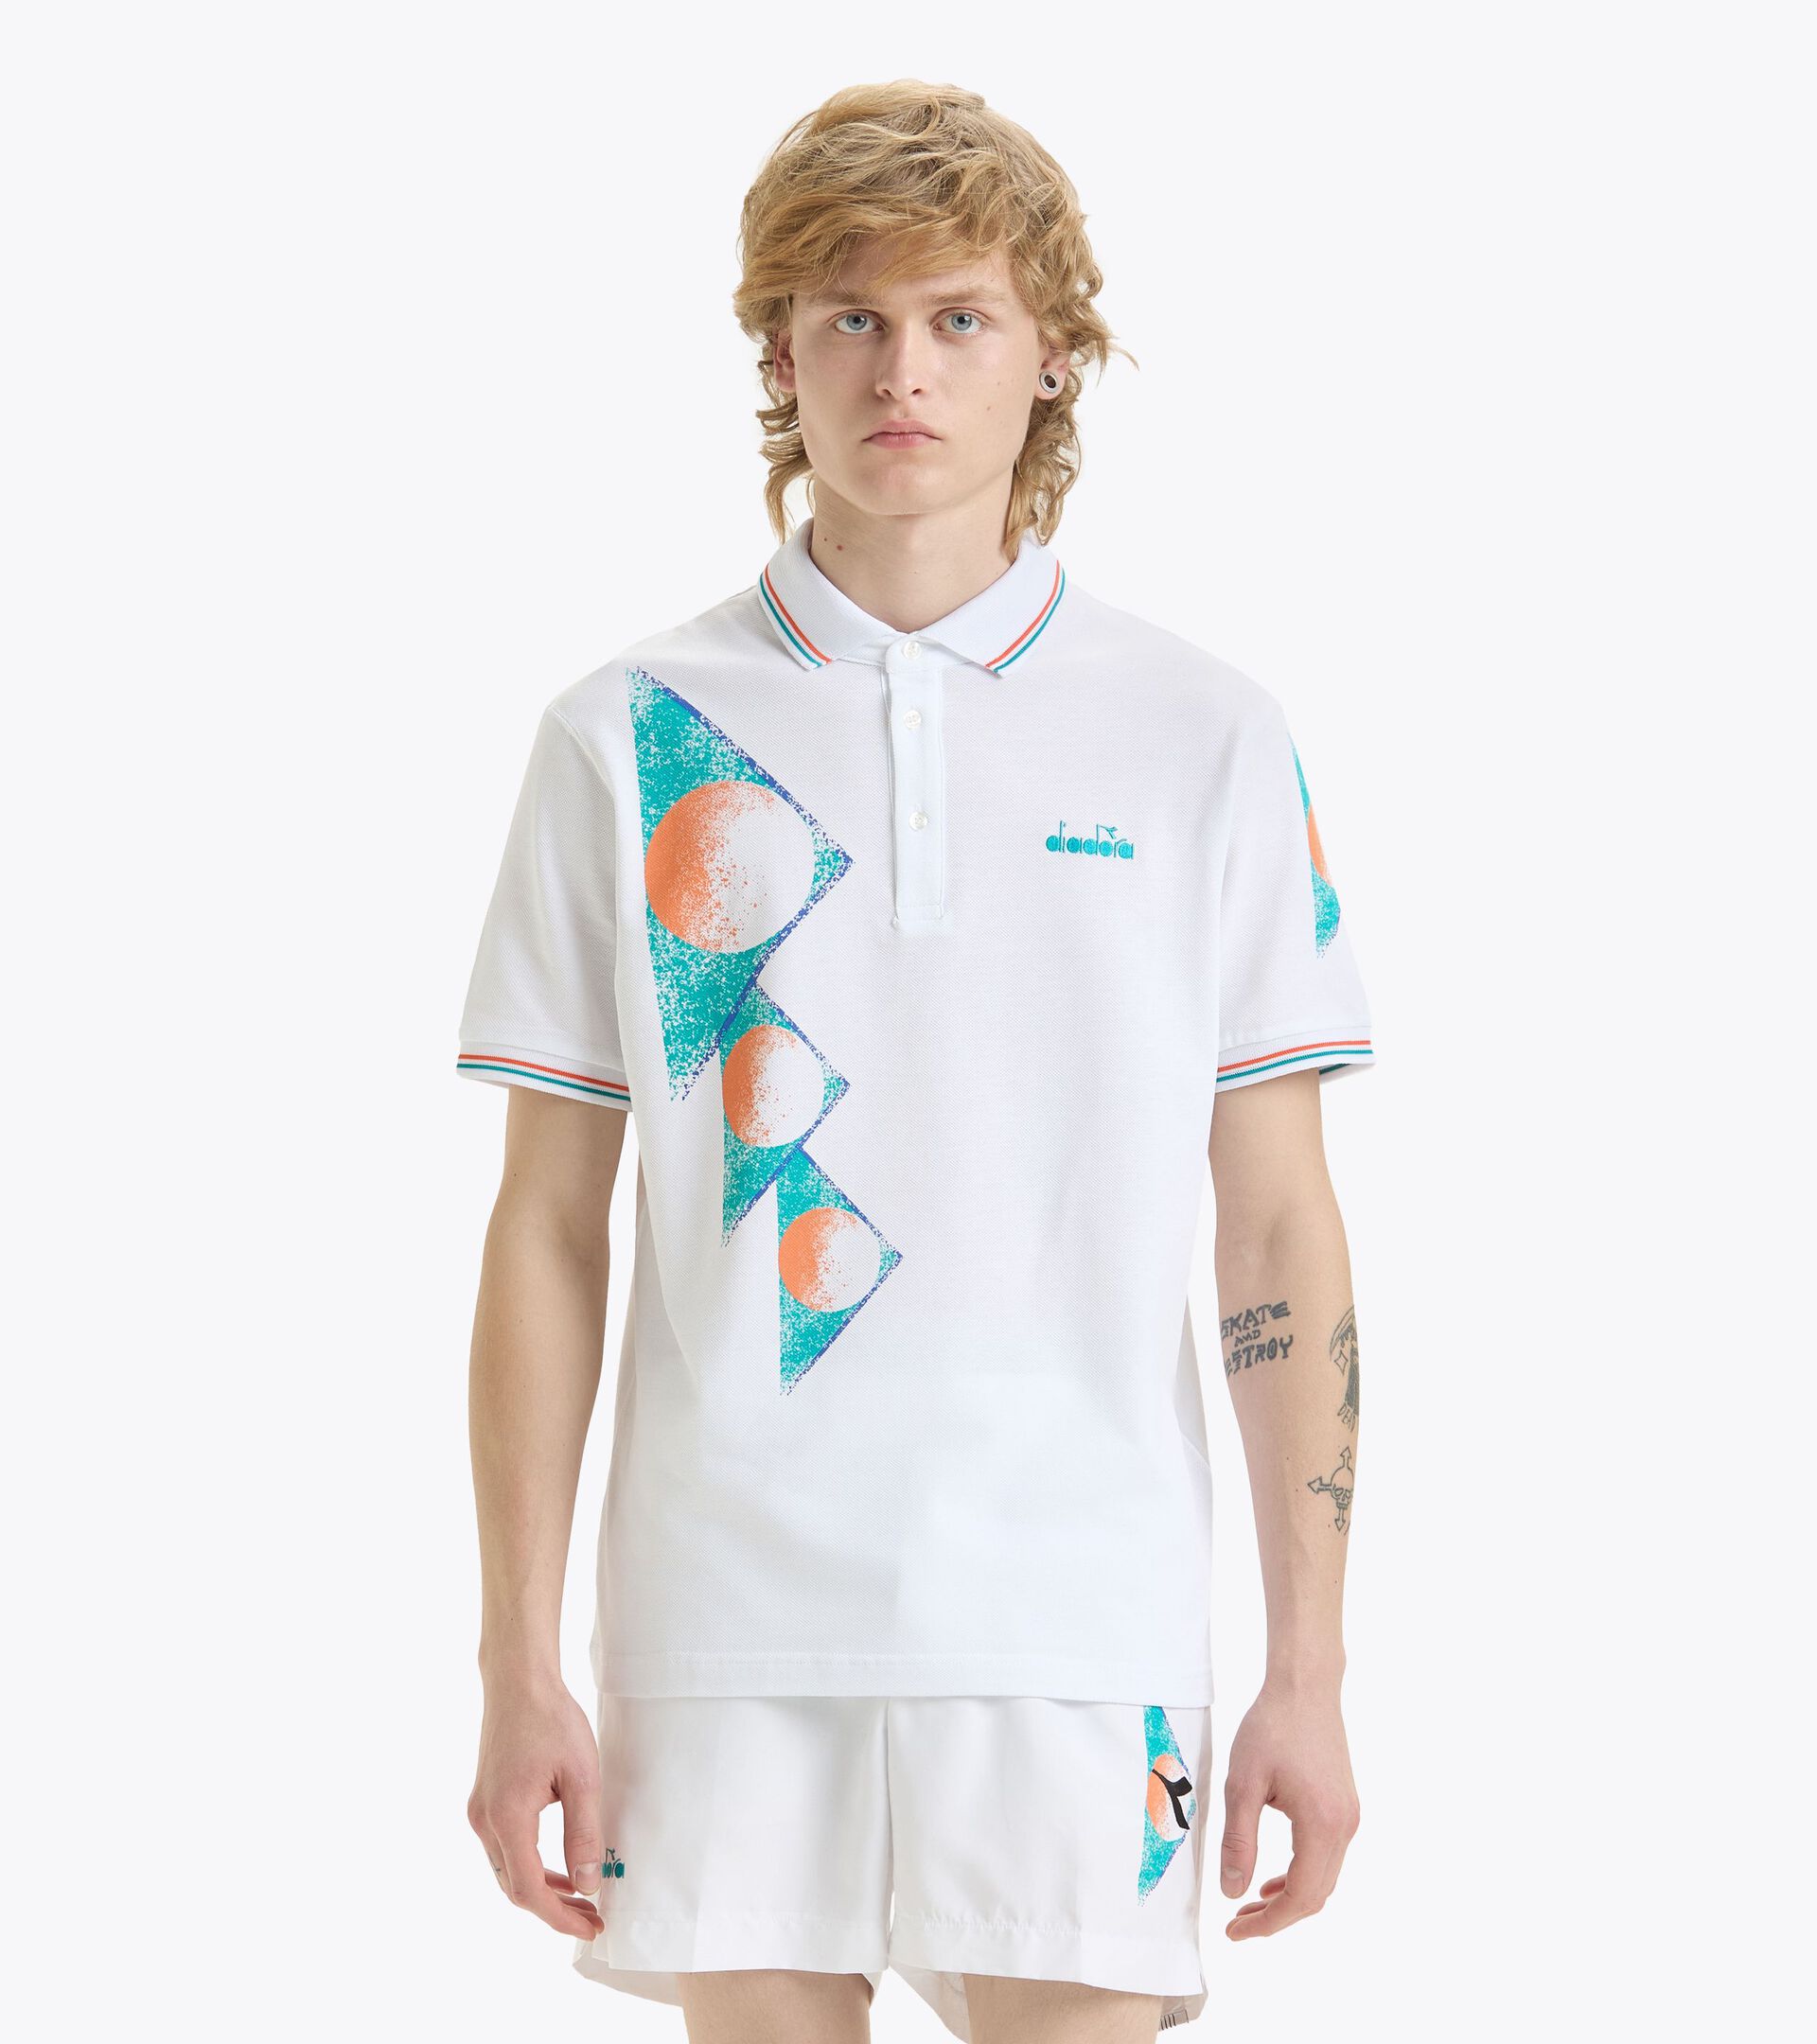 90s-inspired Polo shirt - Made in Italy - Men’s
 POLO SS TENNIS 90 OPTICAL WHITE - Diadora